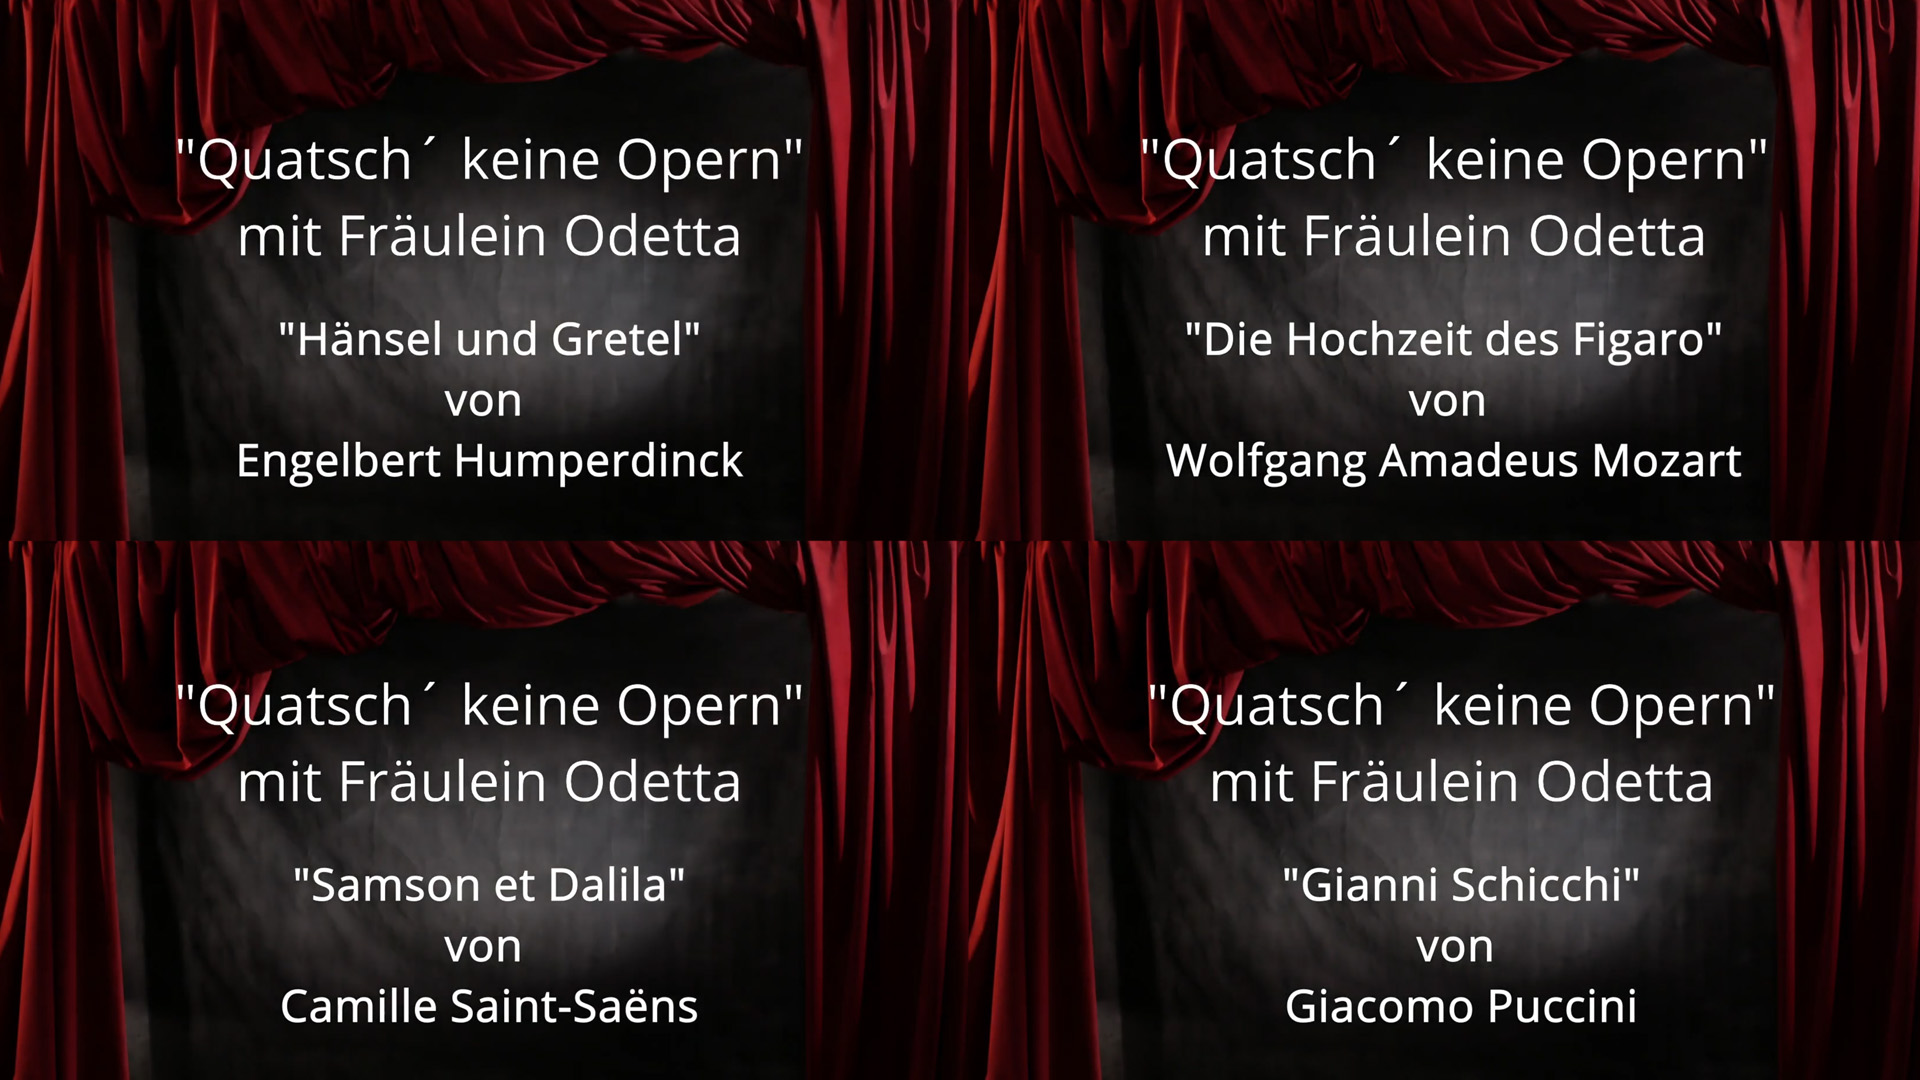 Videoserie " Quatsch keine Opern" von Fräulein Odetta